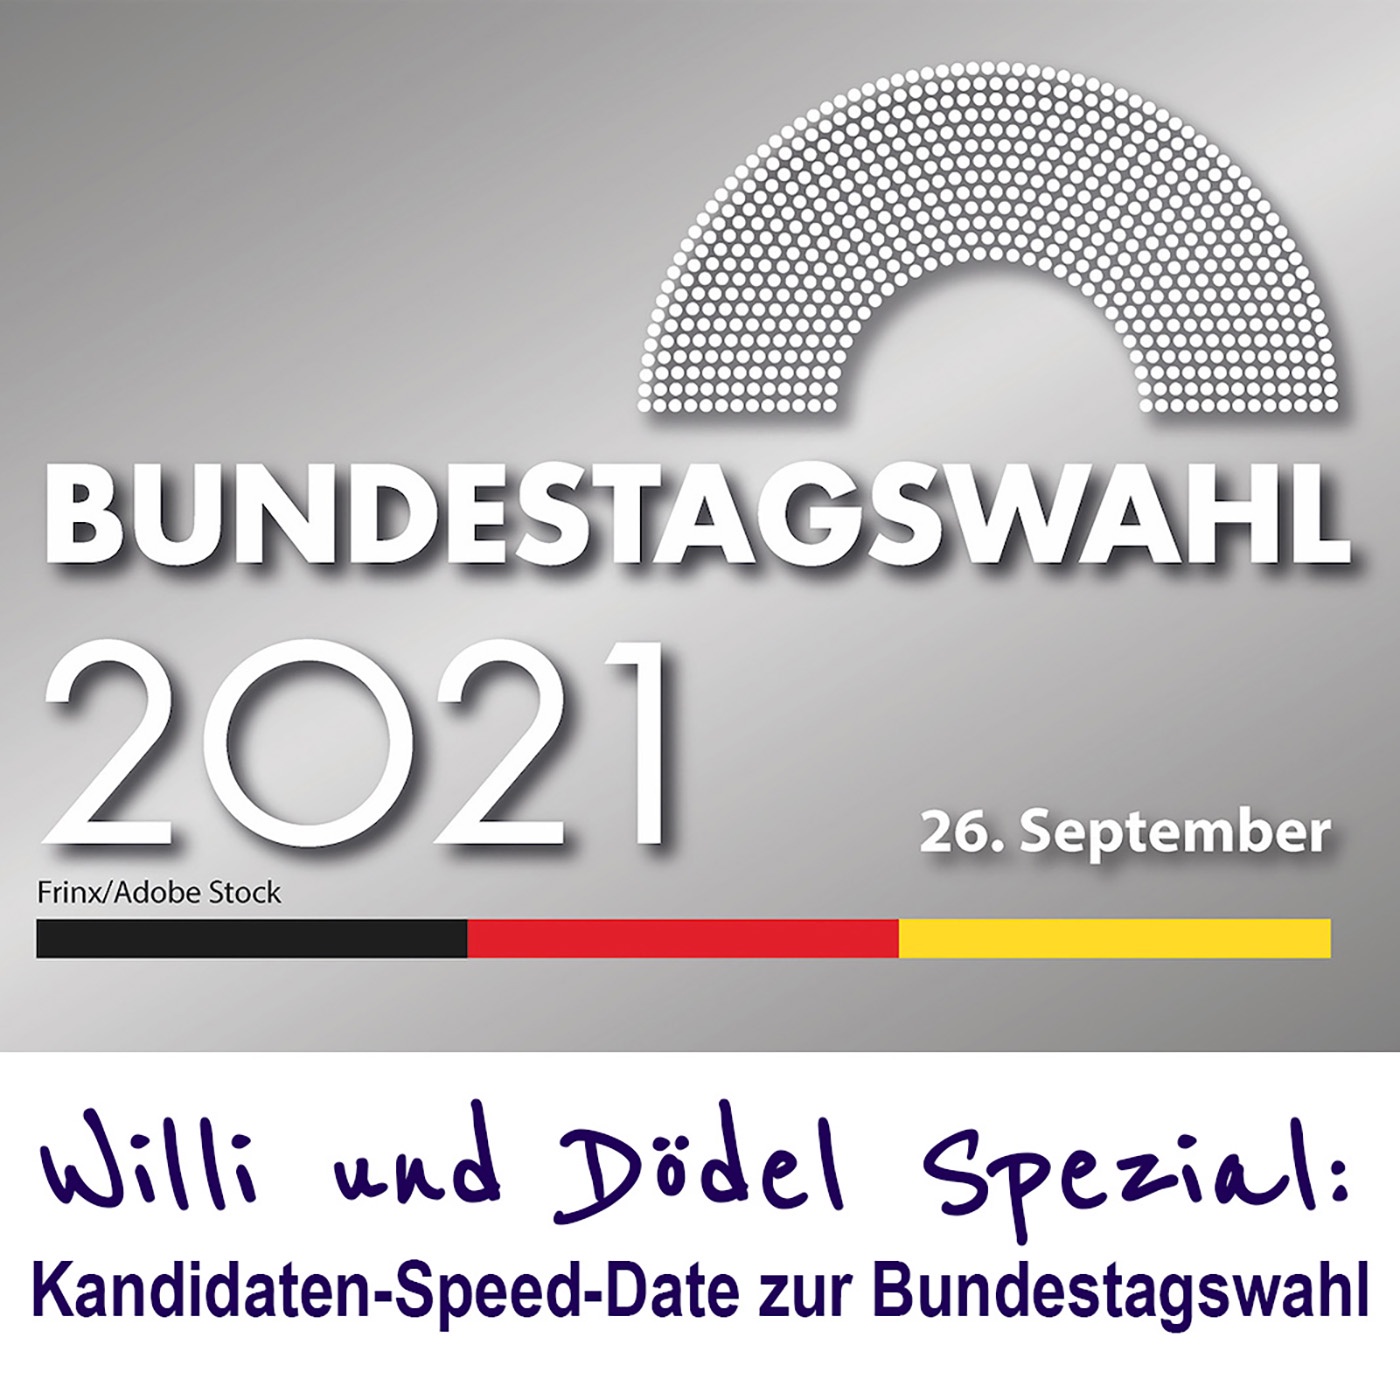 Willi und Dödel Spezial: Kandidaten-Speed-Date zur Bundestagswahl